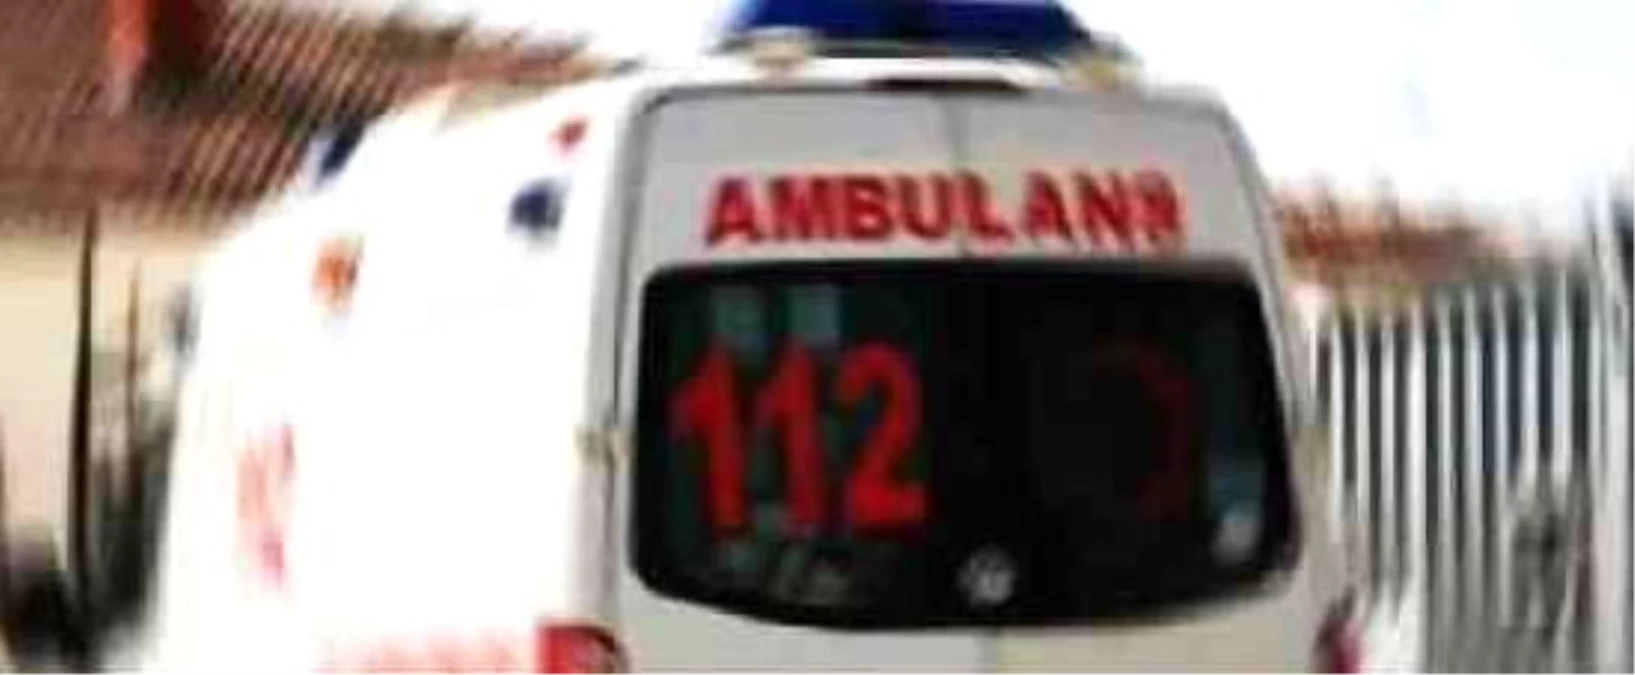 Manisa\'da Trafik Kazası: 3 Yaralı